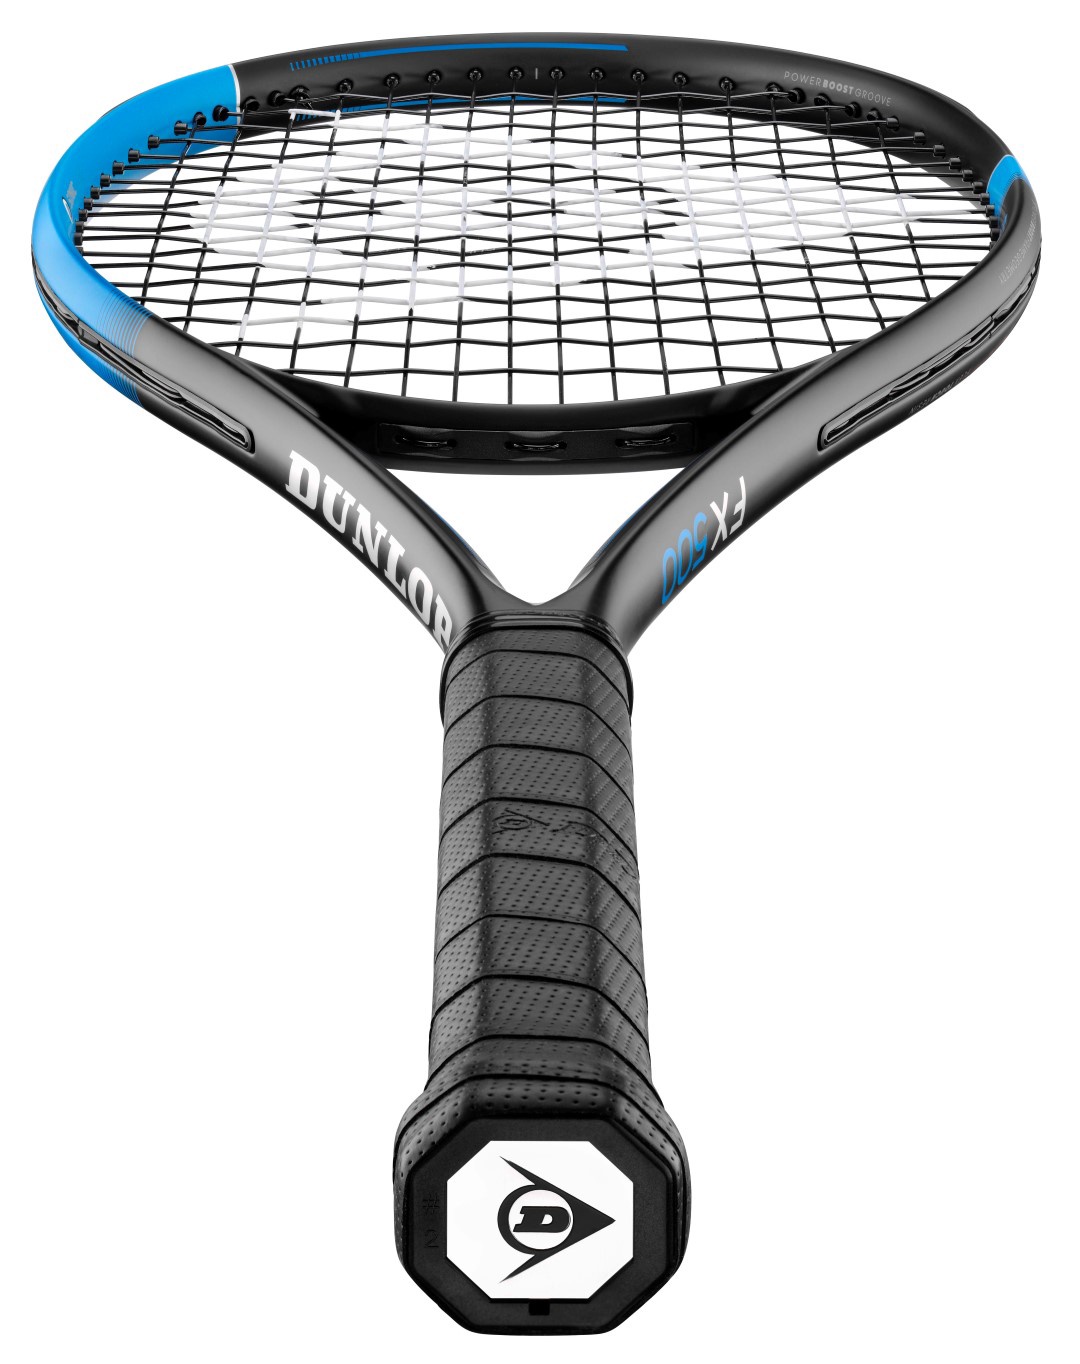 Tennisereket Dunlop FX500 G2 621DN10335794, sinine/must - Krauta.ee